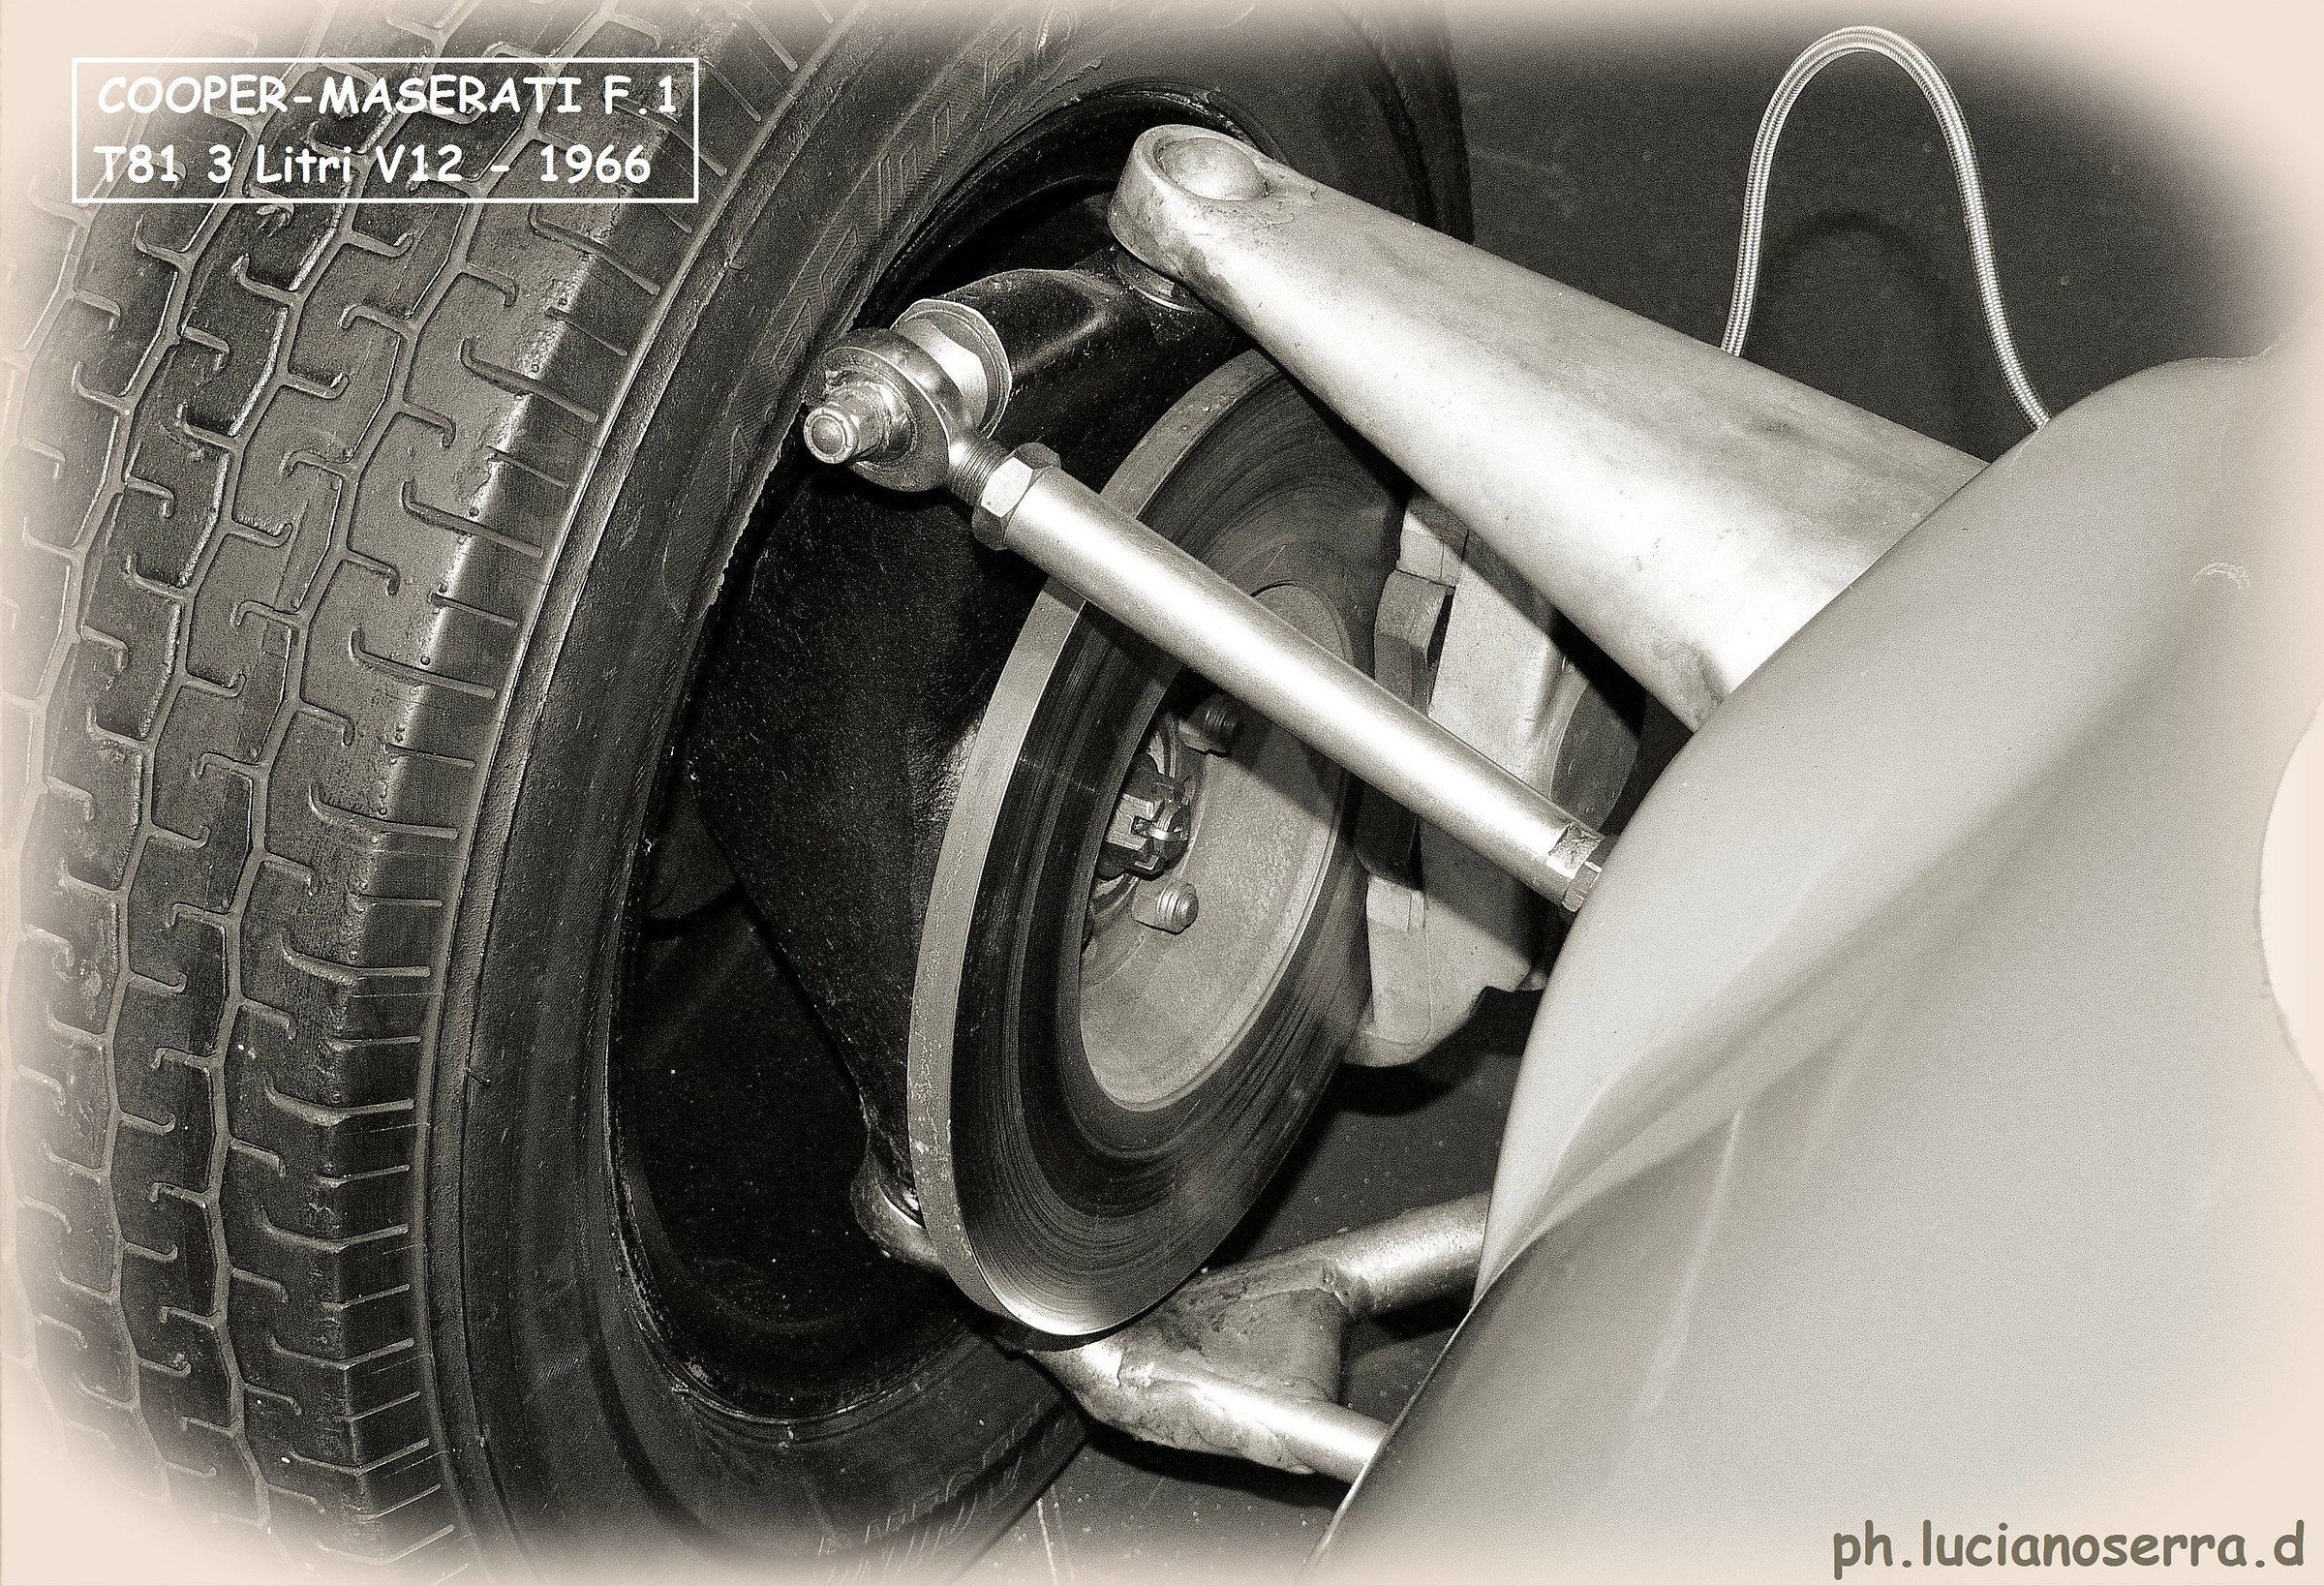 Cooper - Maserati F.1 T81 3 Liter V12 - 1966...